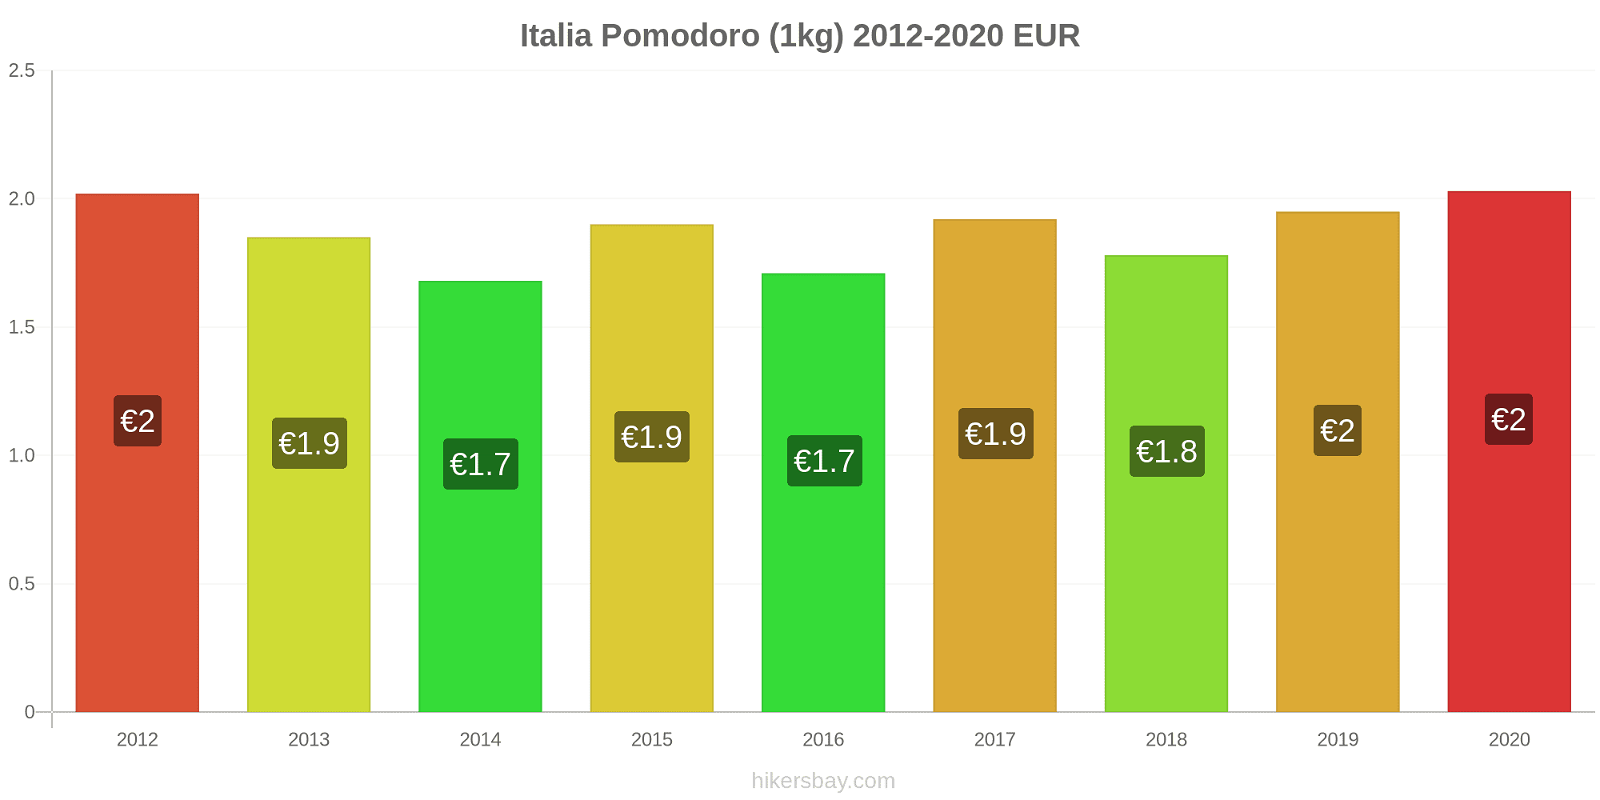 Italia variazioni di prezzo Pomodoro (1kg) hikersbay.com